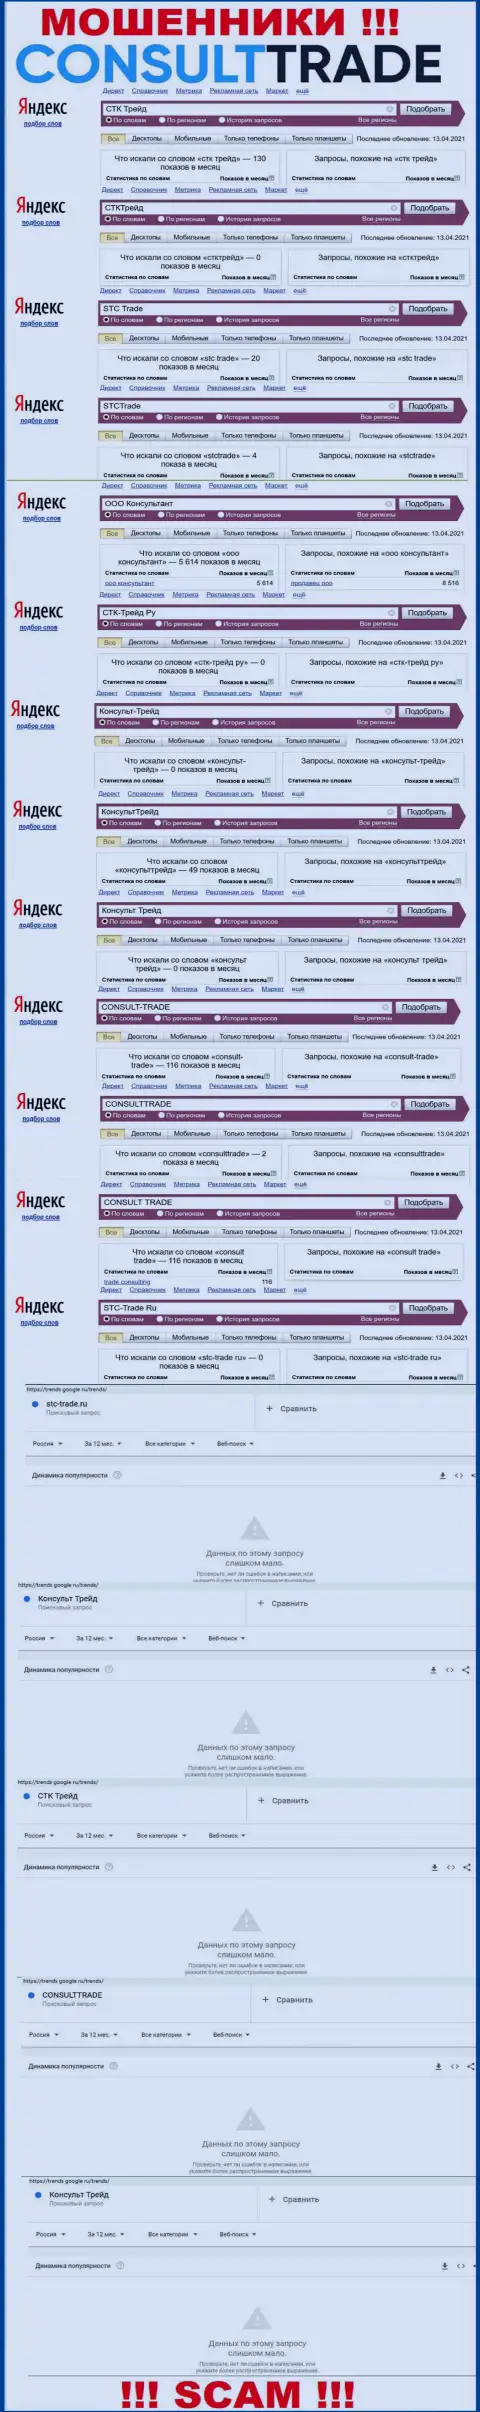 Скрин статистики online запросов по противозаконно действующей компании СТКТрейд